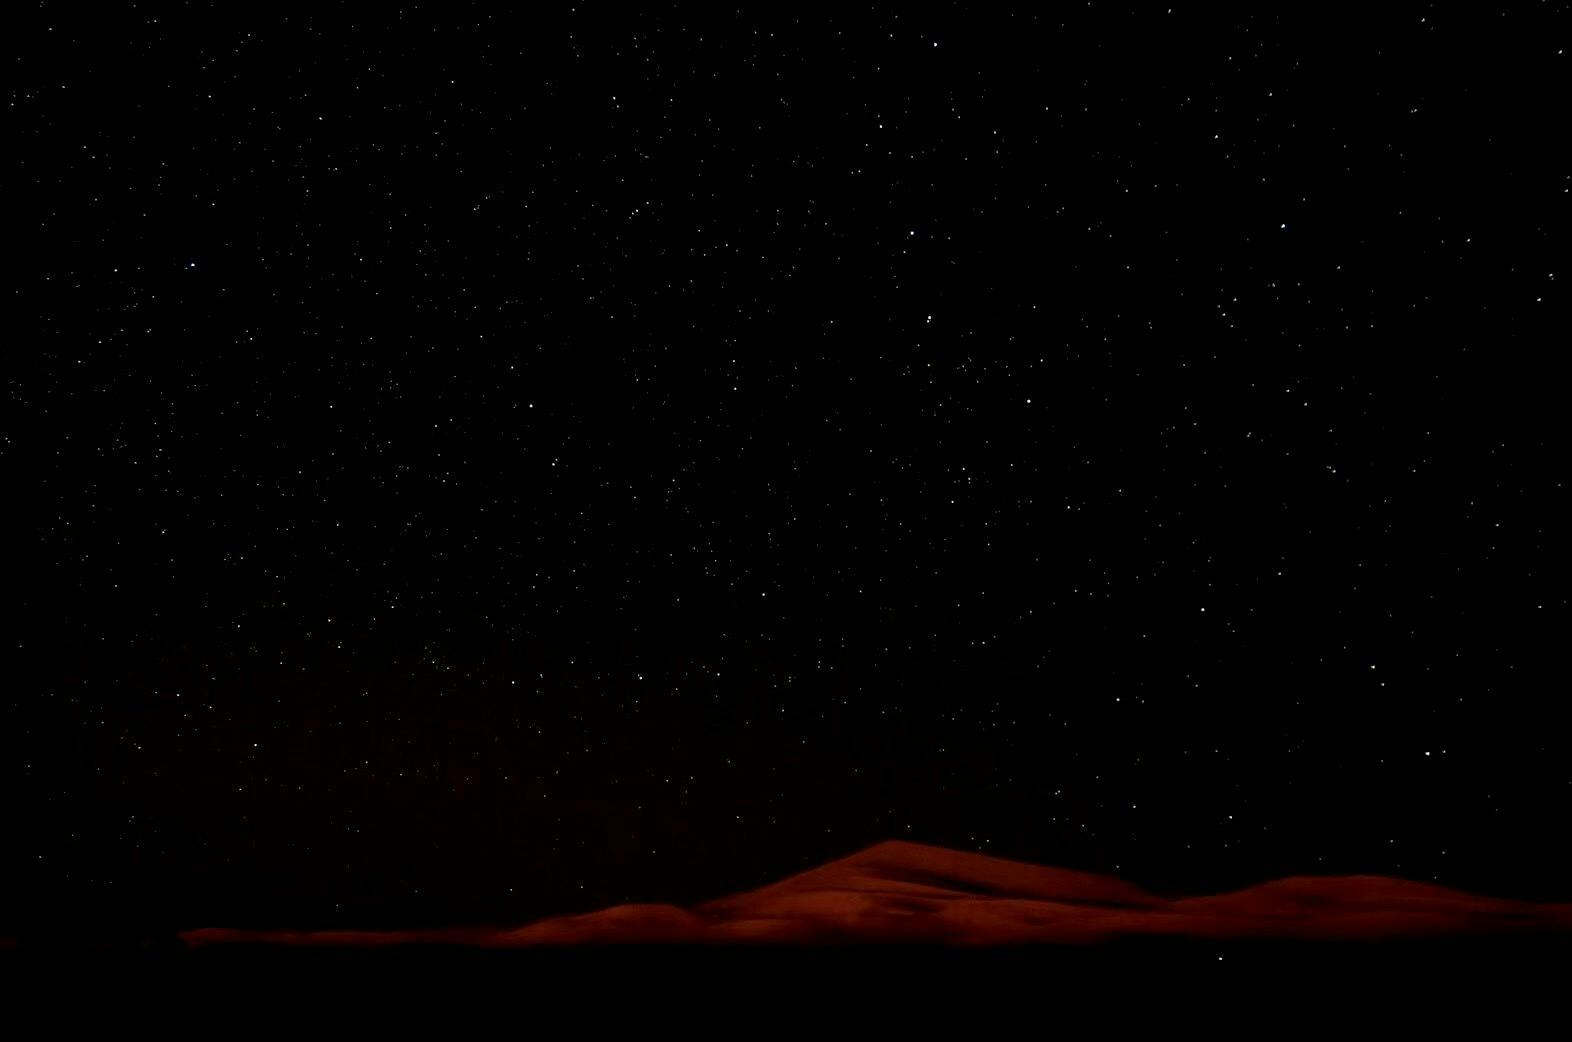 コロナで建設中止の危機 新たな観光名所 サハラ砂漠に温泉をつくる Campfire キャンプファイヤー